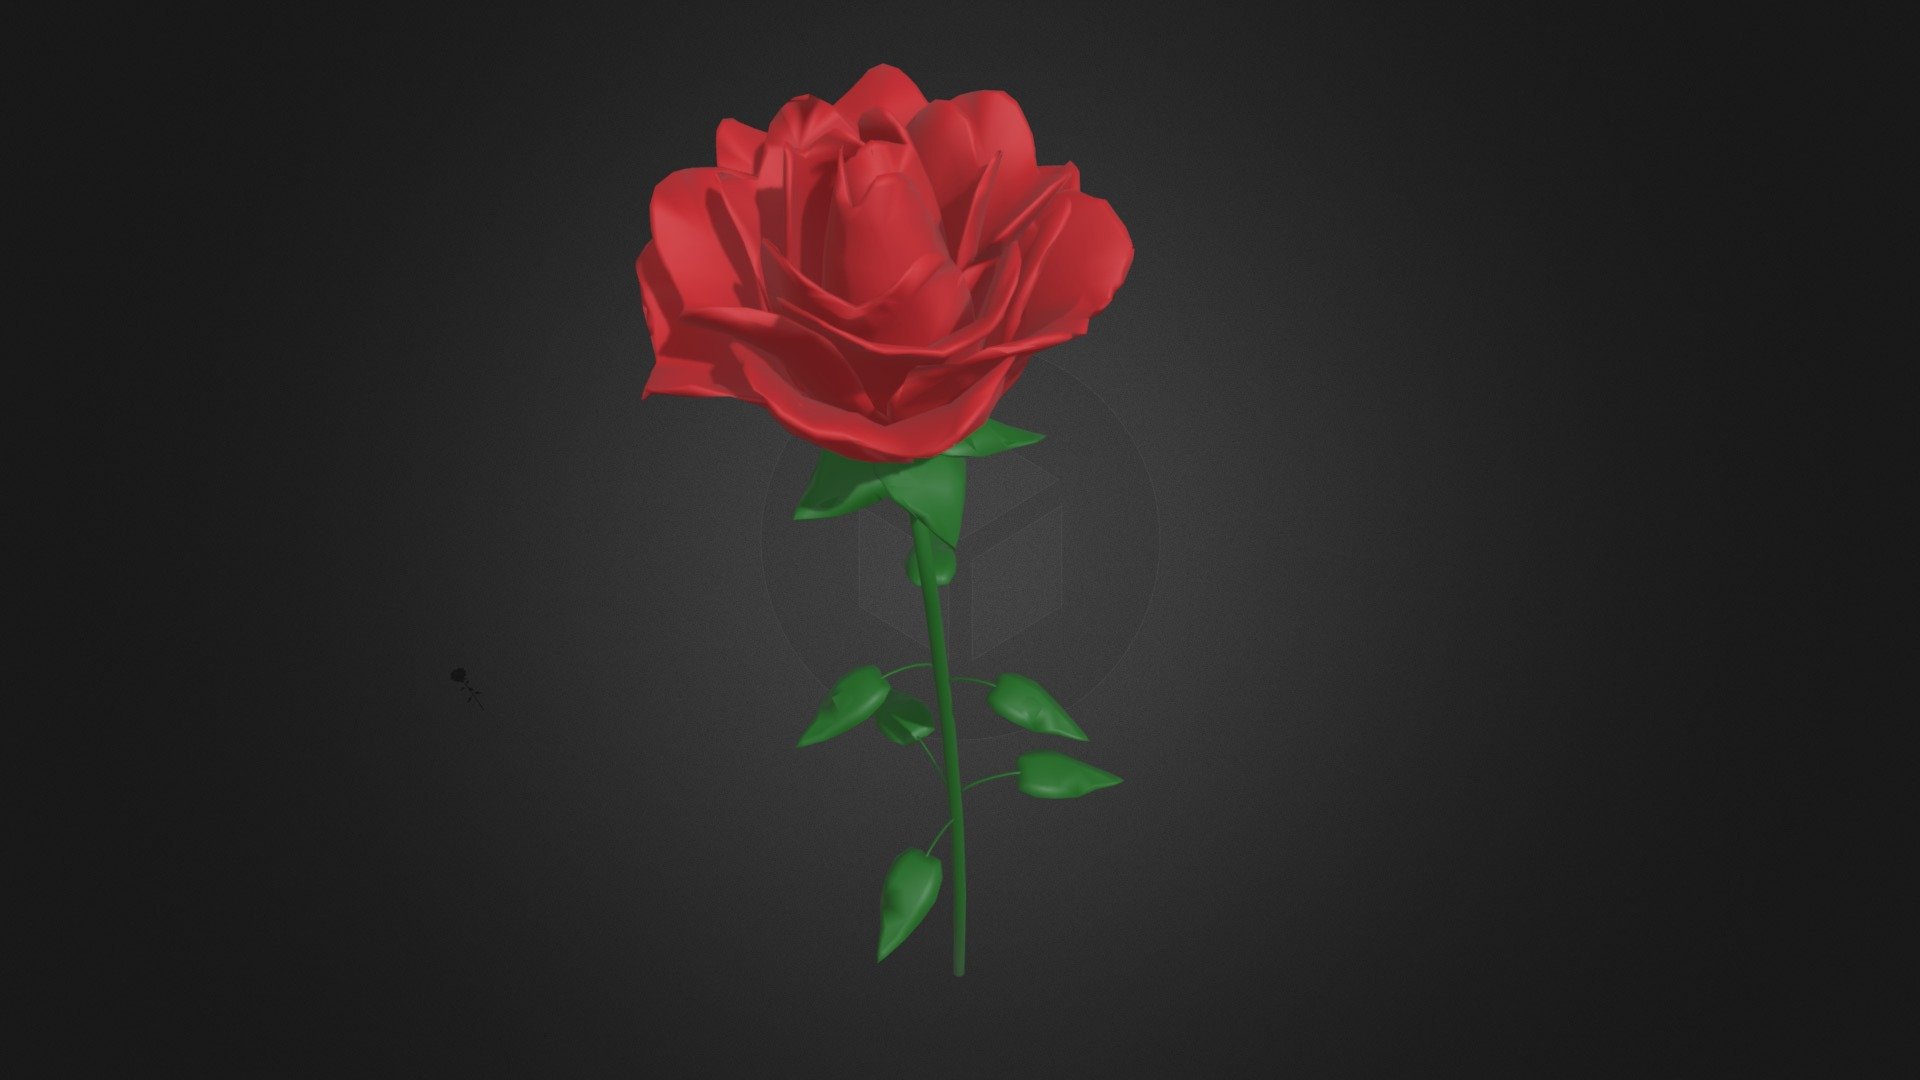 Rose 3d model - Rose - Buy Royalty Free 3D model by 3DDomino 3d model